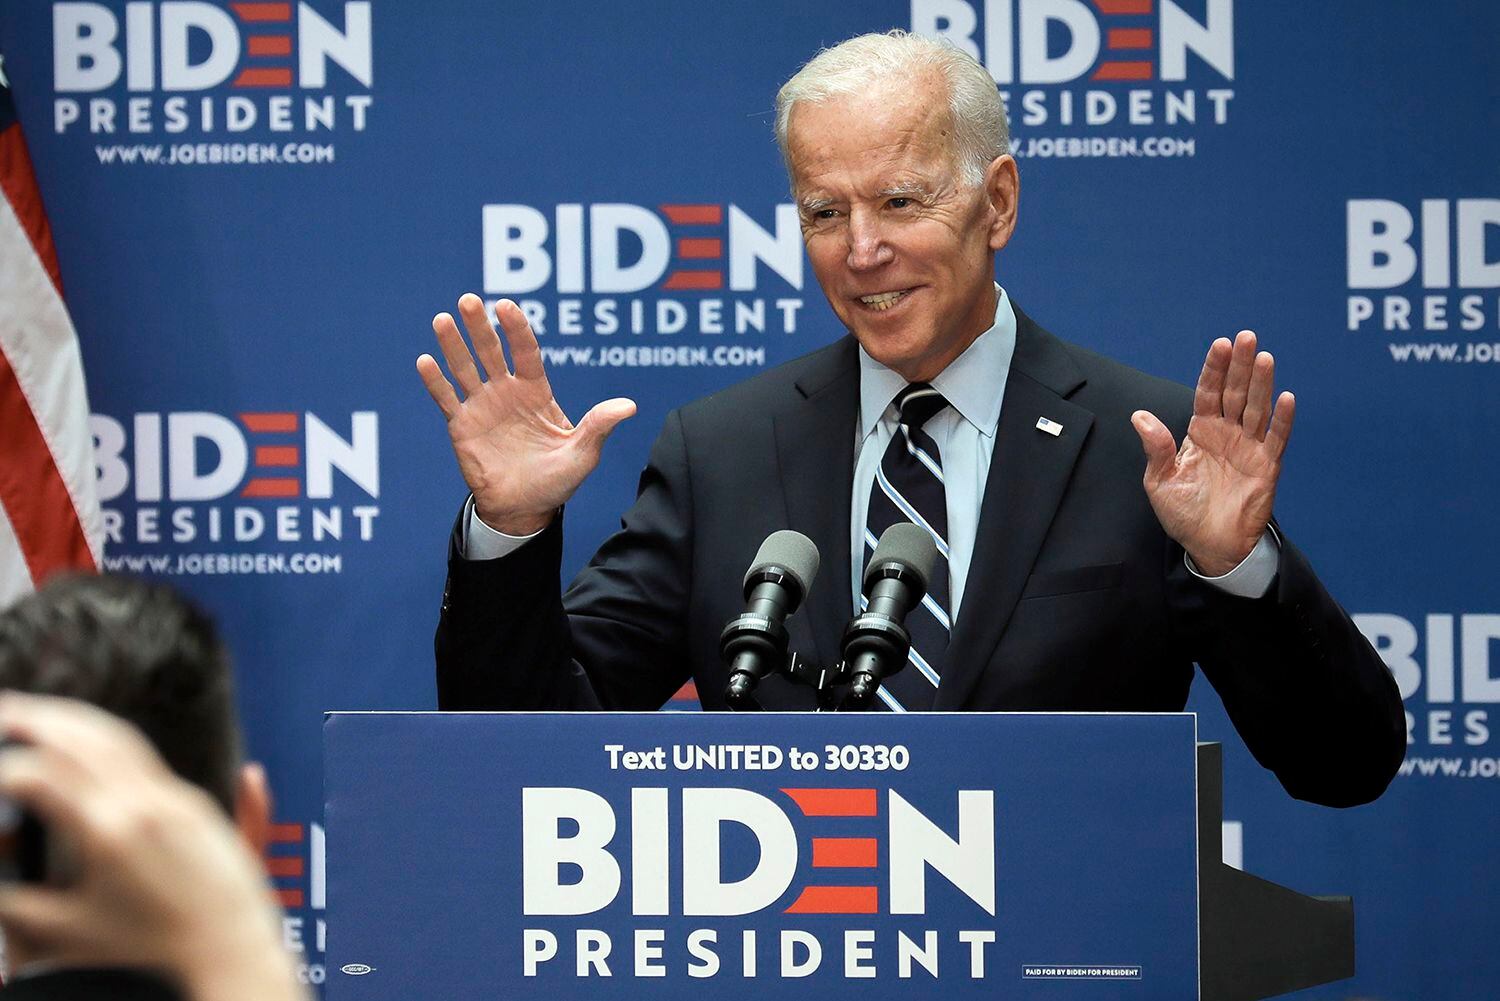 Biden promises to end 'forever wars' as president